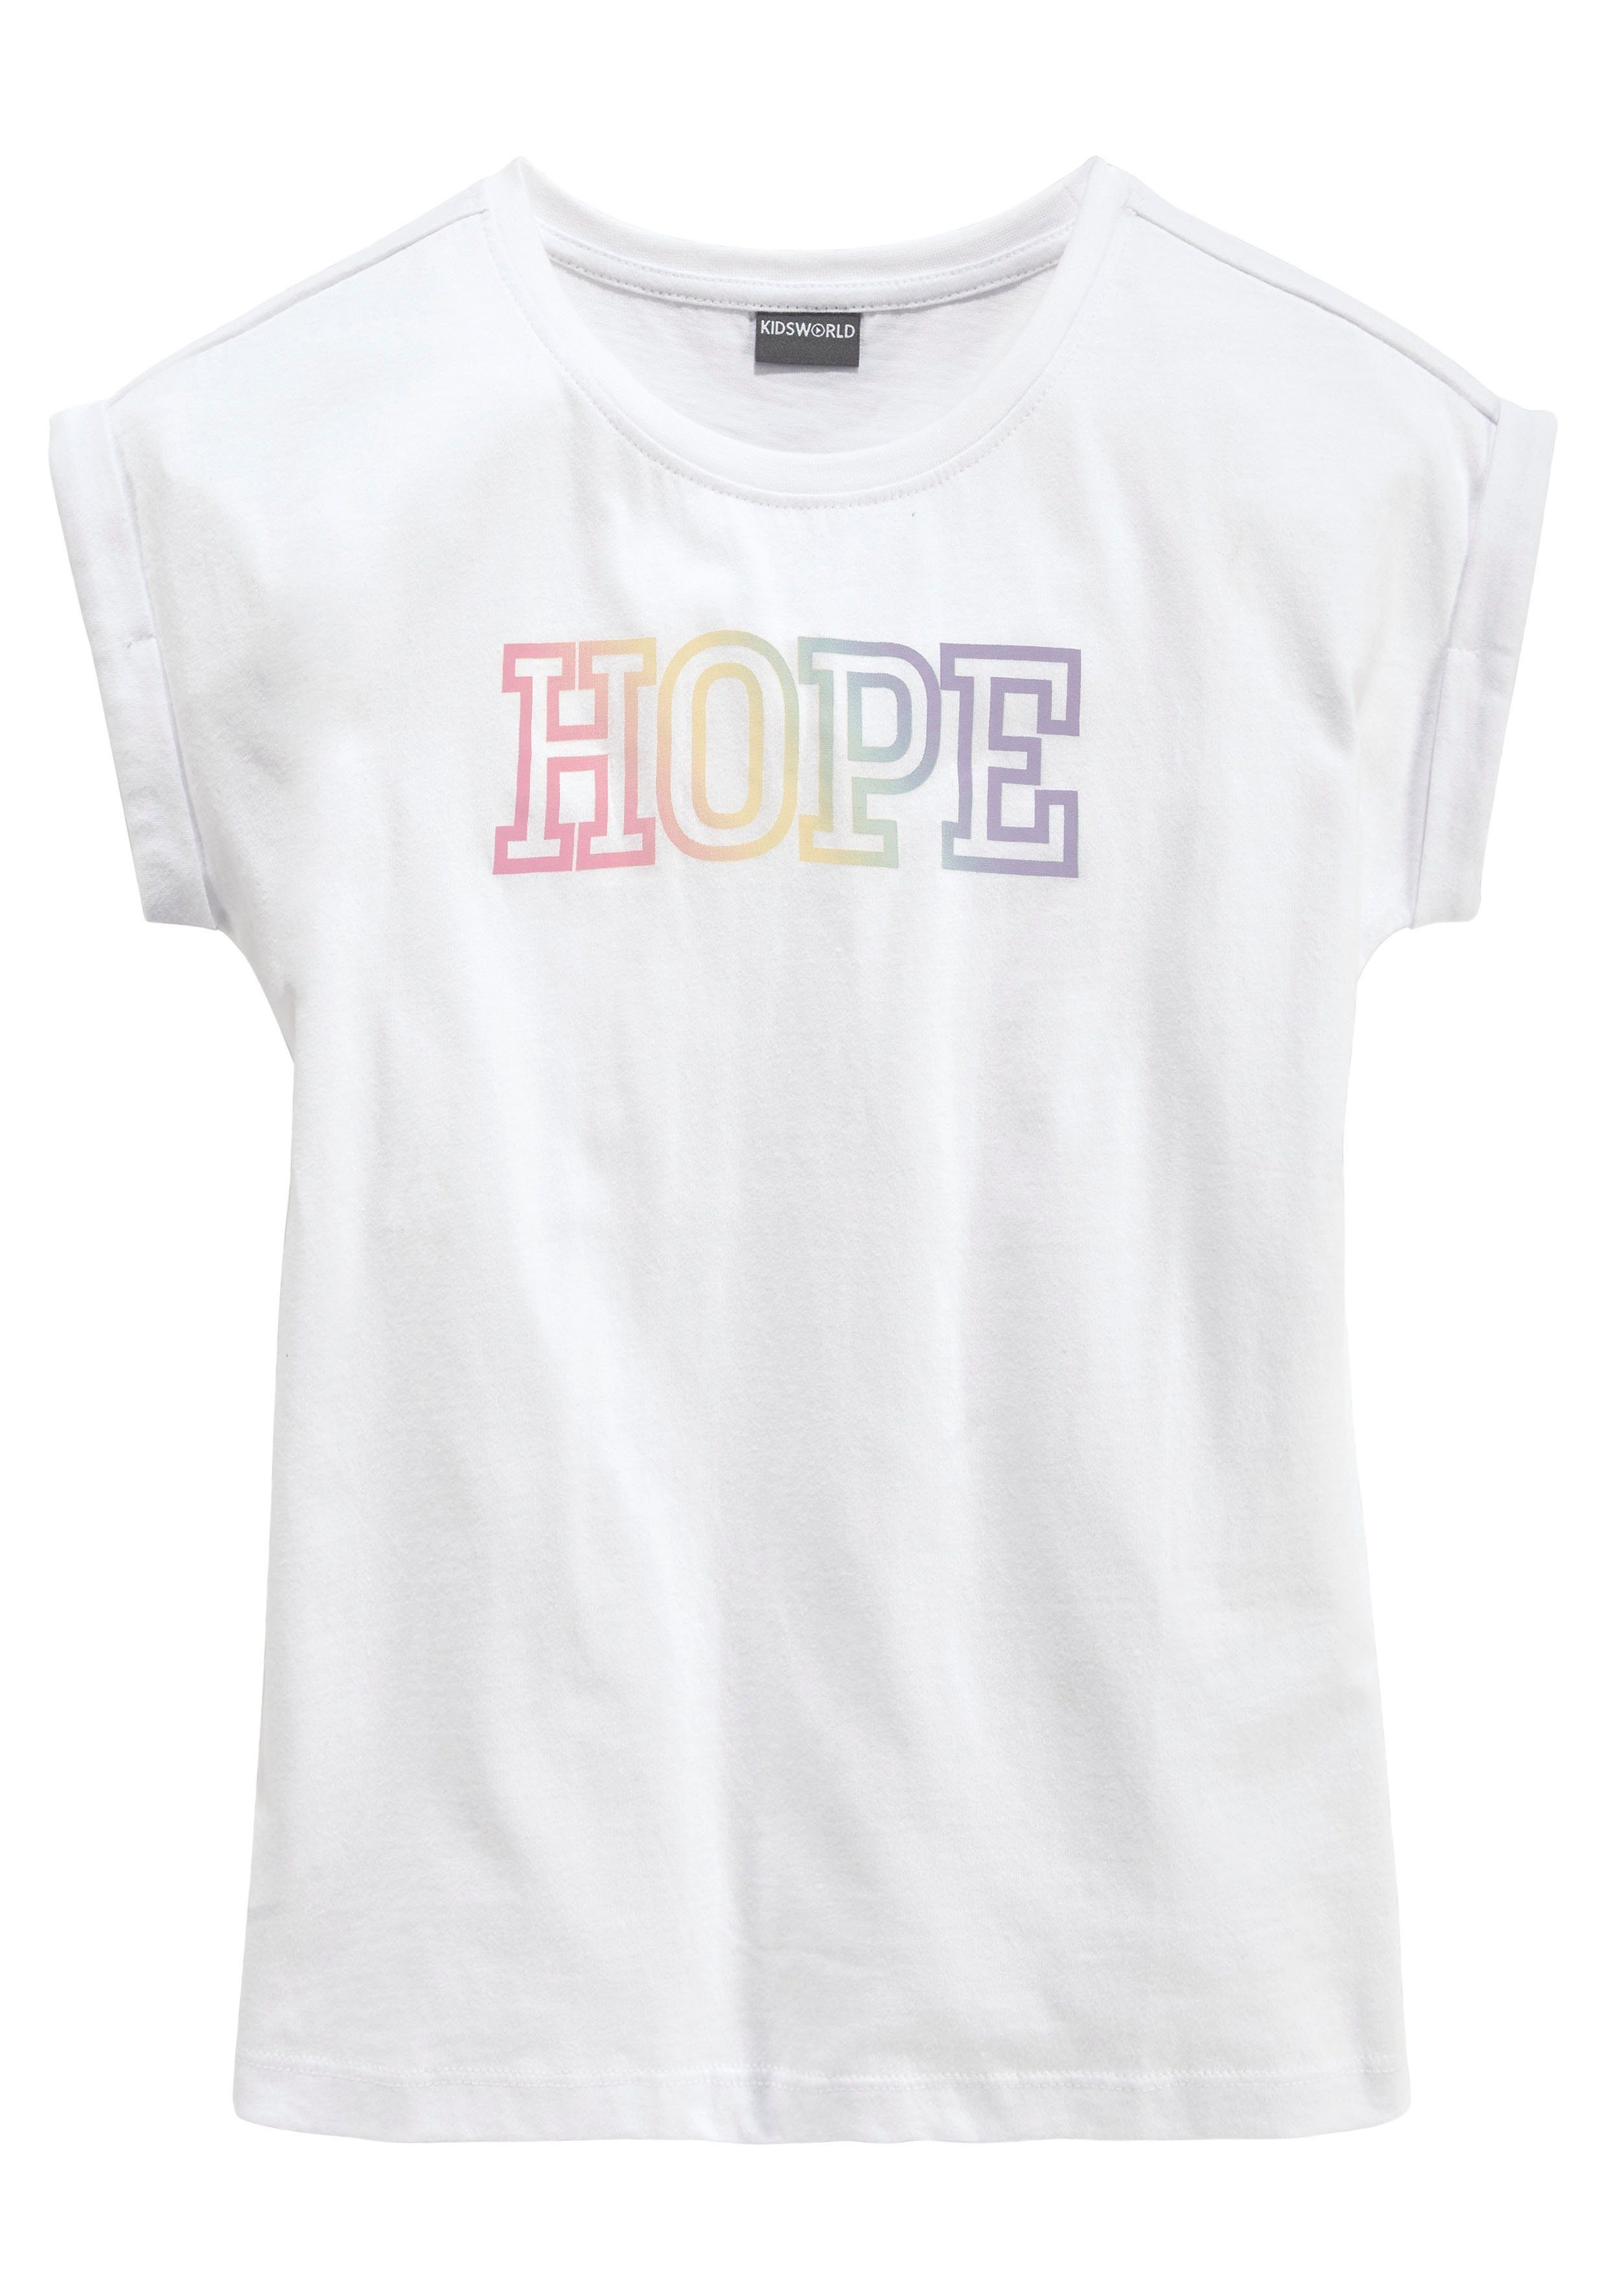 Statementdruck mit KIDSWORLD HOPE T-Shirt